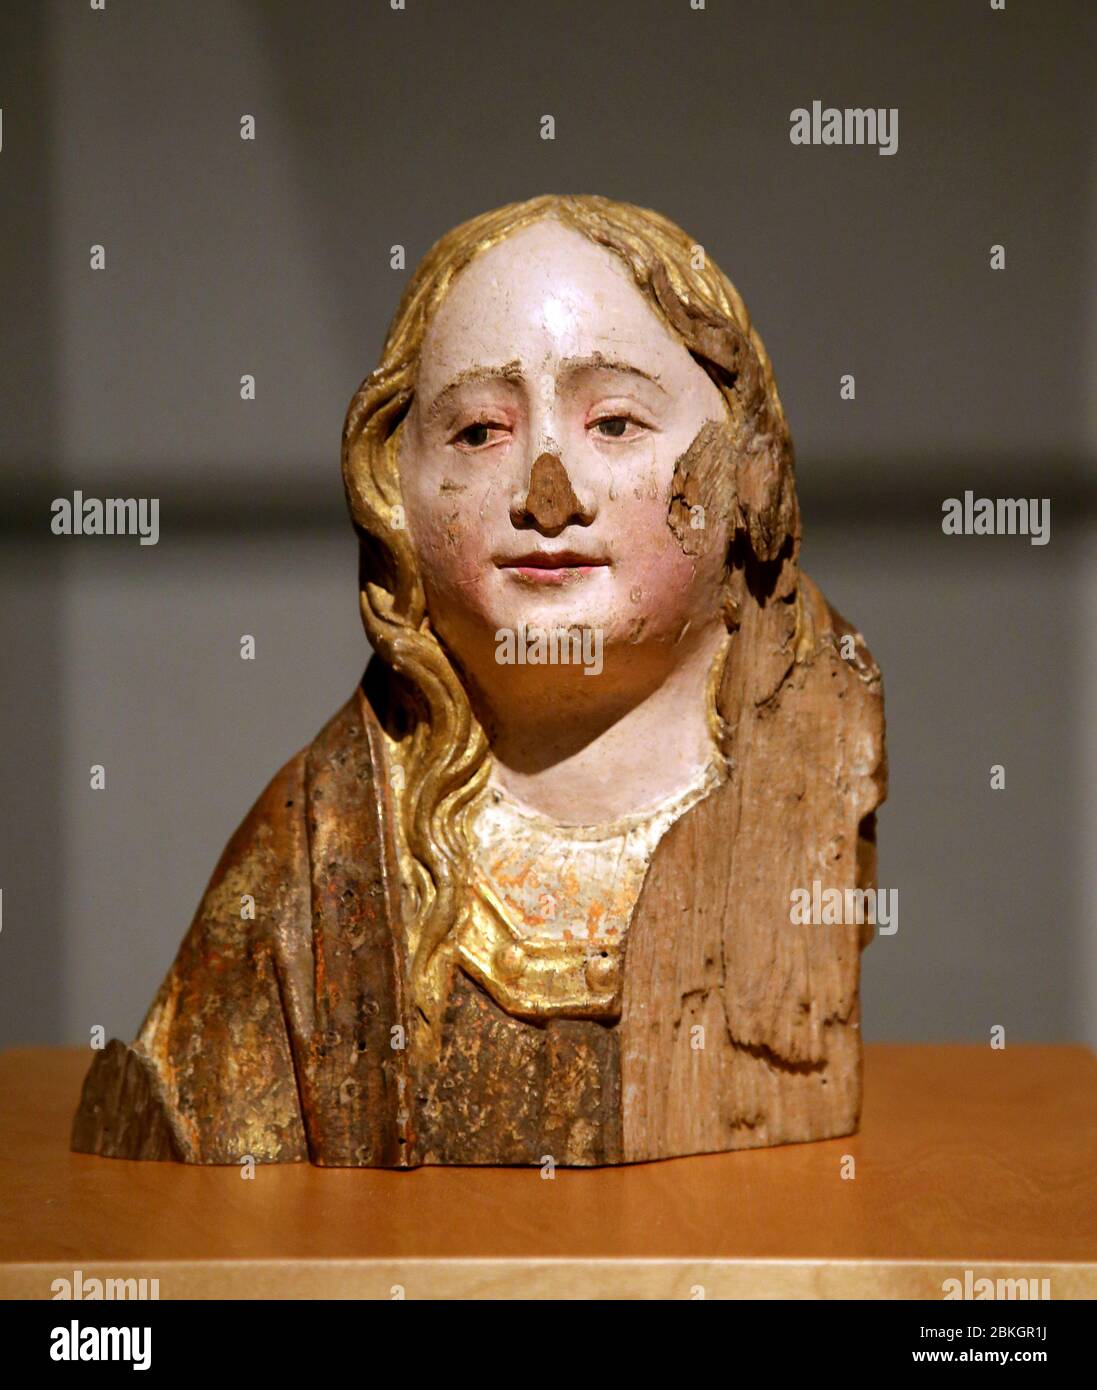 Weibliche Figur aus polychromem Holz.(Ende 15. Jh.) Alejo de Vahia, spätgotischer Bildhauer. Museu Frederic Mares, Barcelona, Katalonien, Spanien. Stockfoto